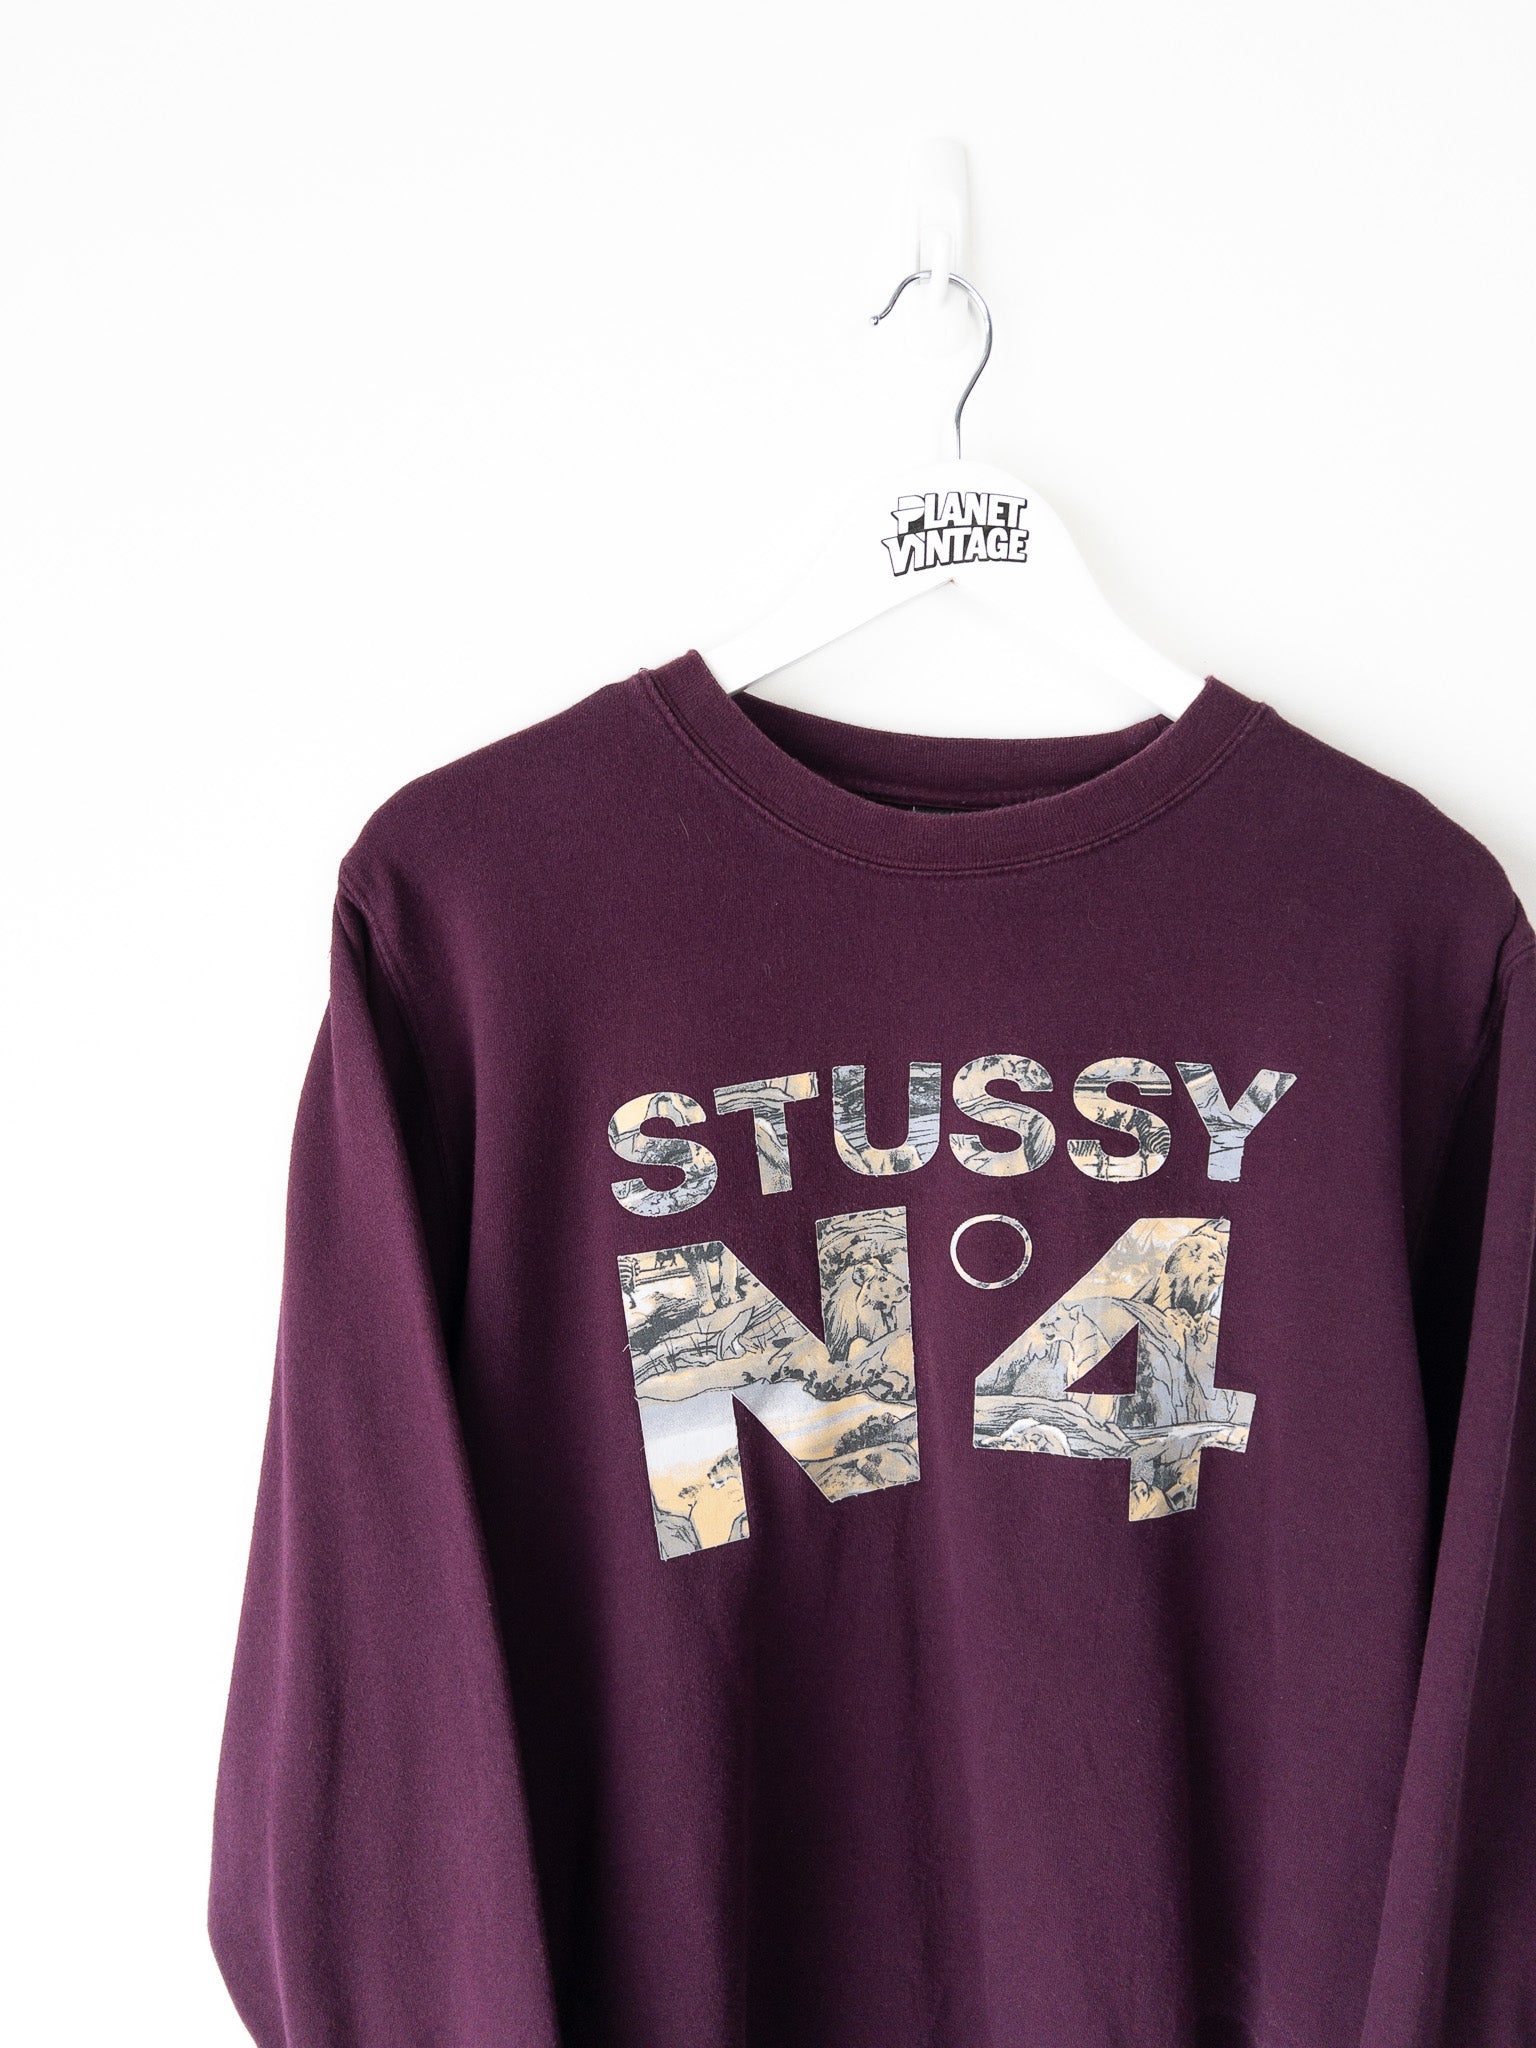 Vintage Stussy Sweatshirt (L)